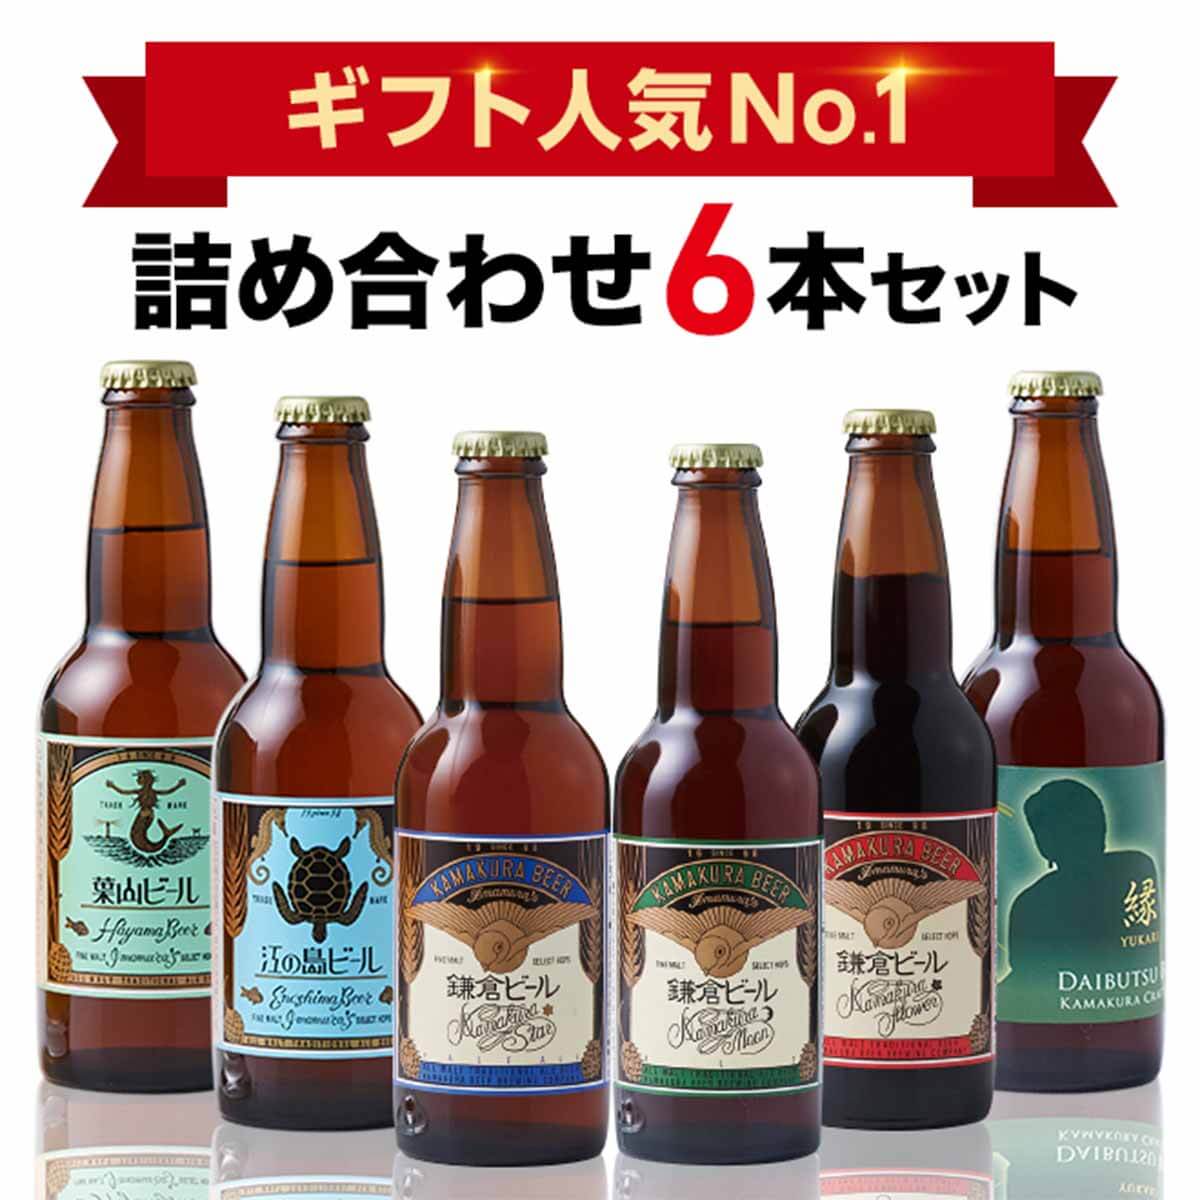 楽天「鎌倉ビール6種類飲み比べセット」